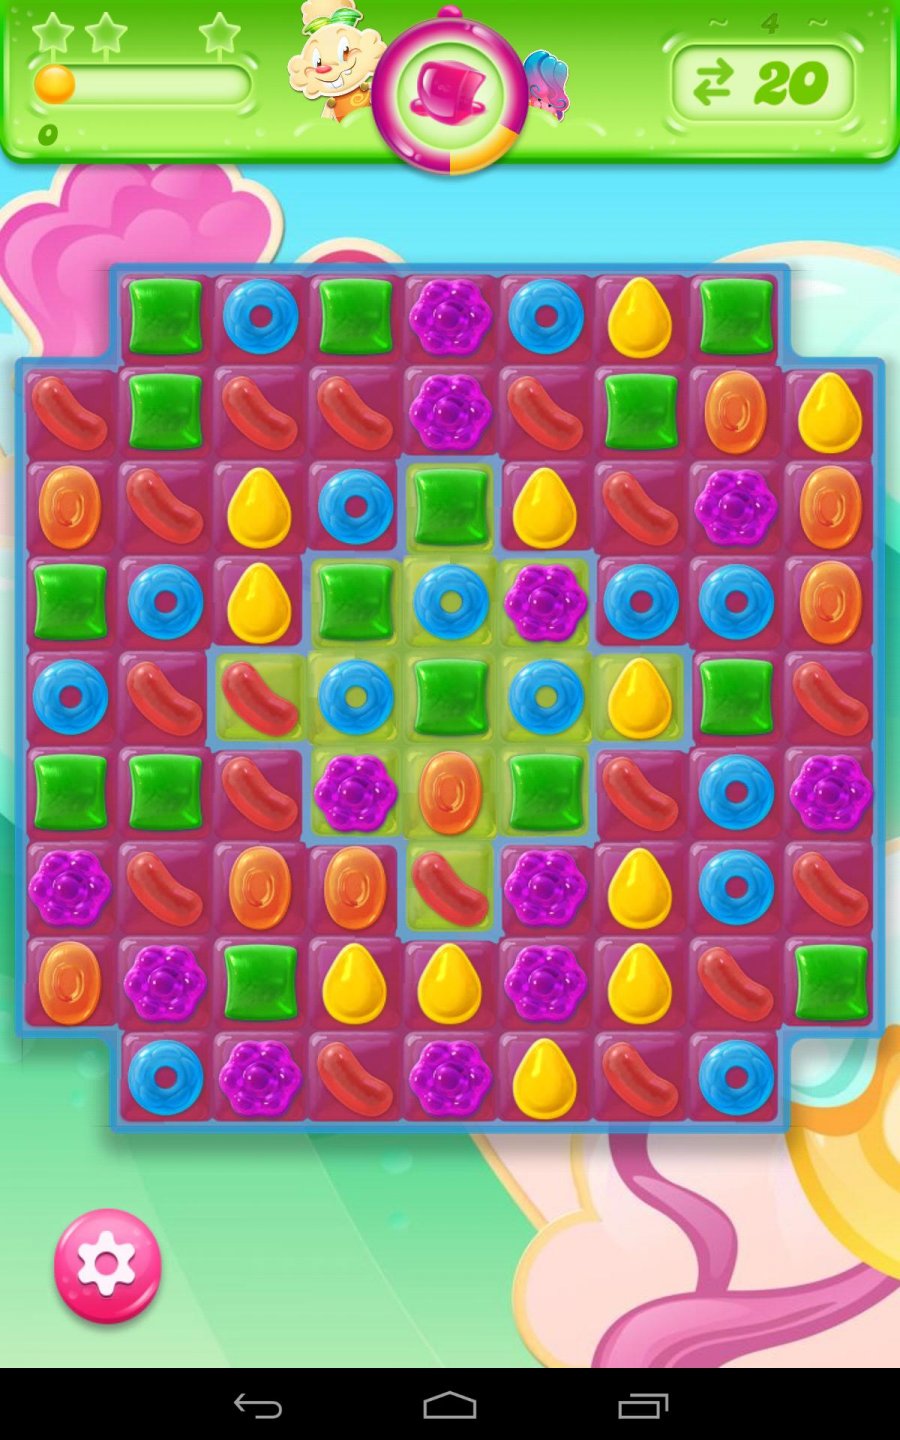 Candy Crush Jelly Saga Android Jeu Apk Com King Candycrushjellysaga